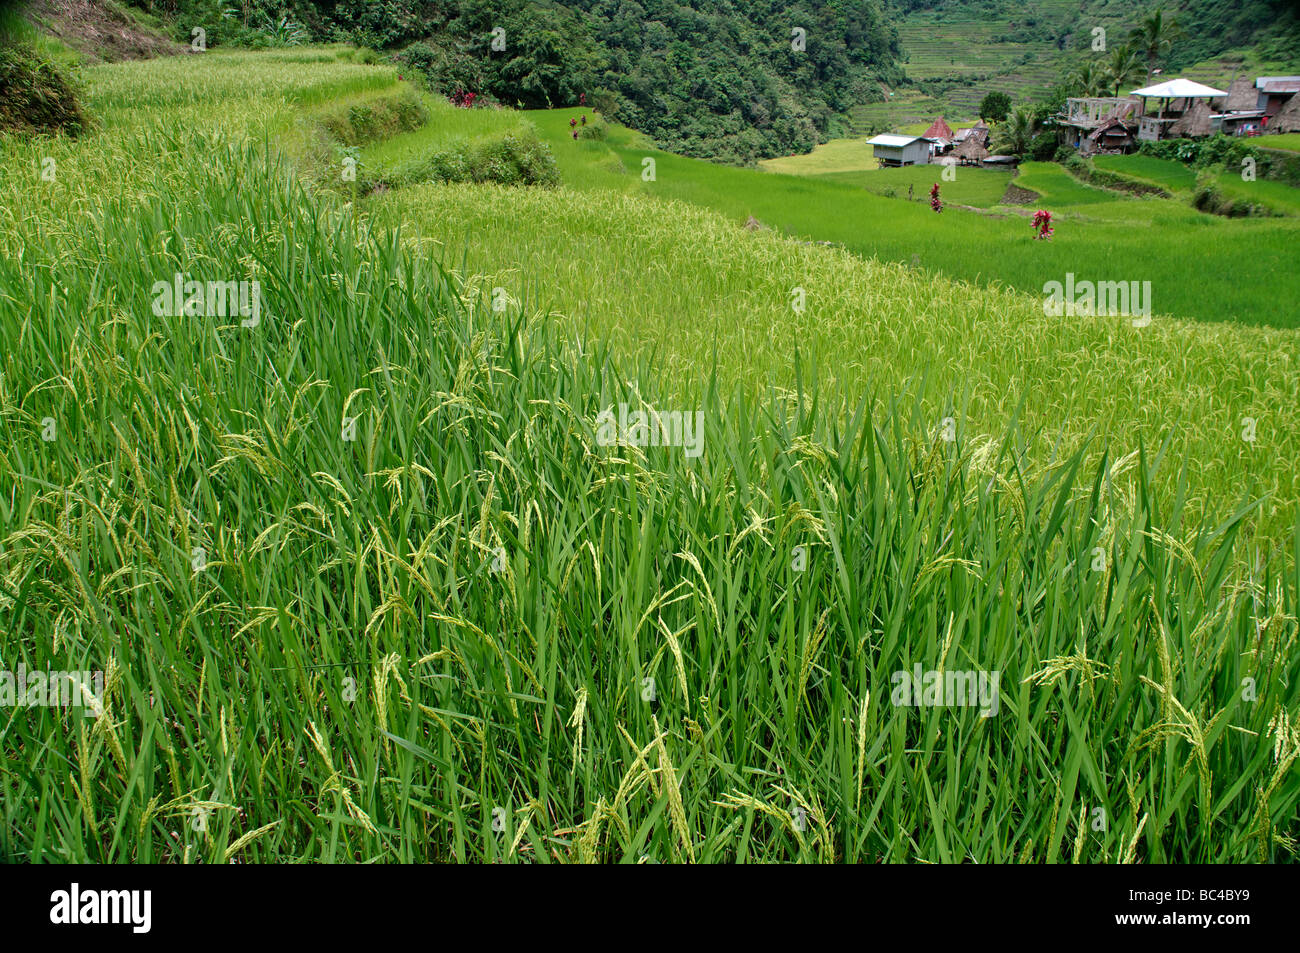 Village de Batad et rizières en terrasses, près de Banaue, Ifugao, nord-Luzon, Philippines Banque D'Images